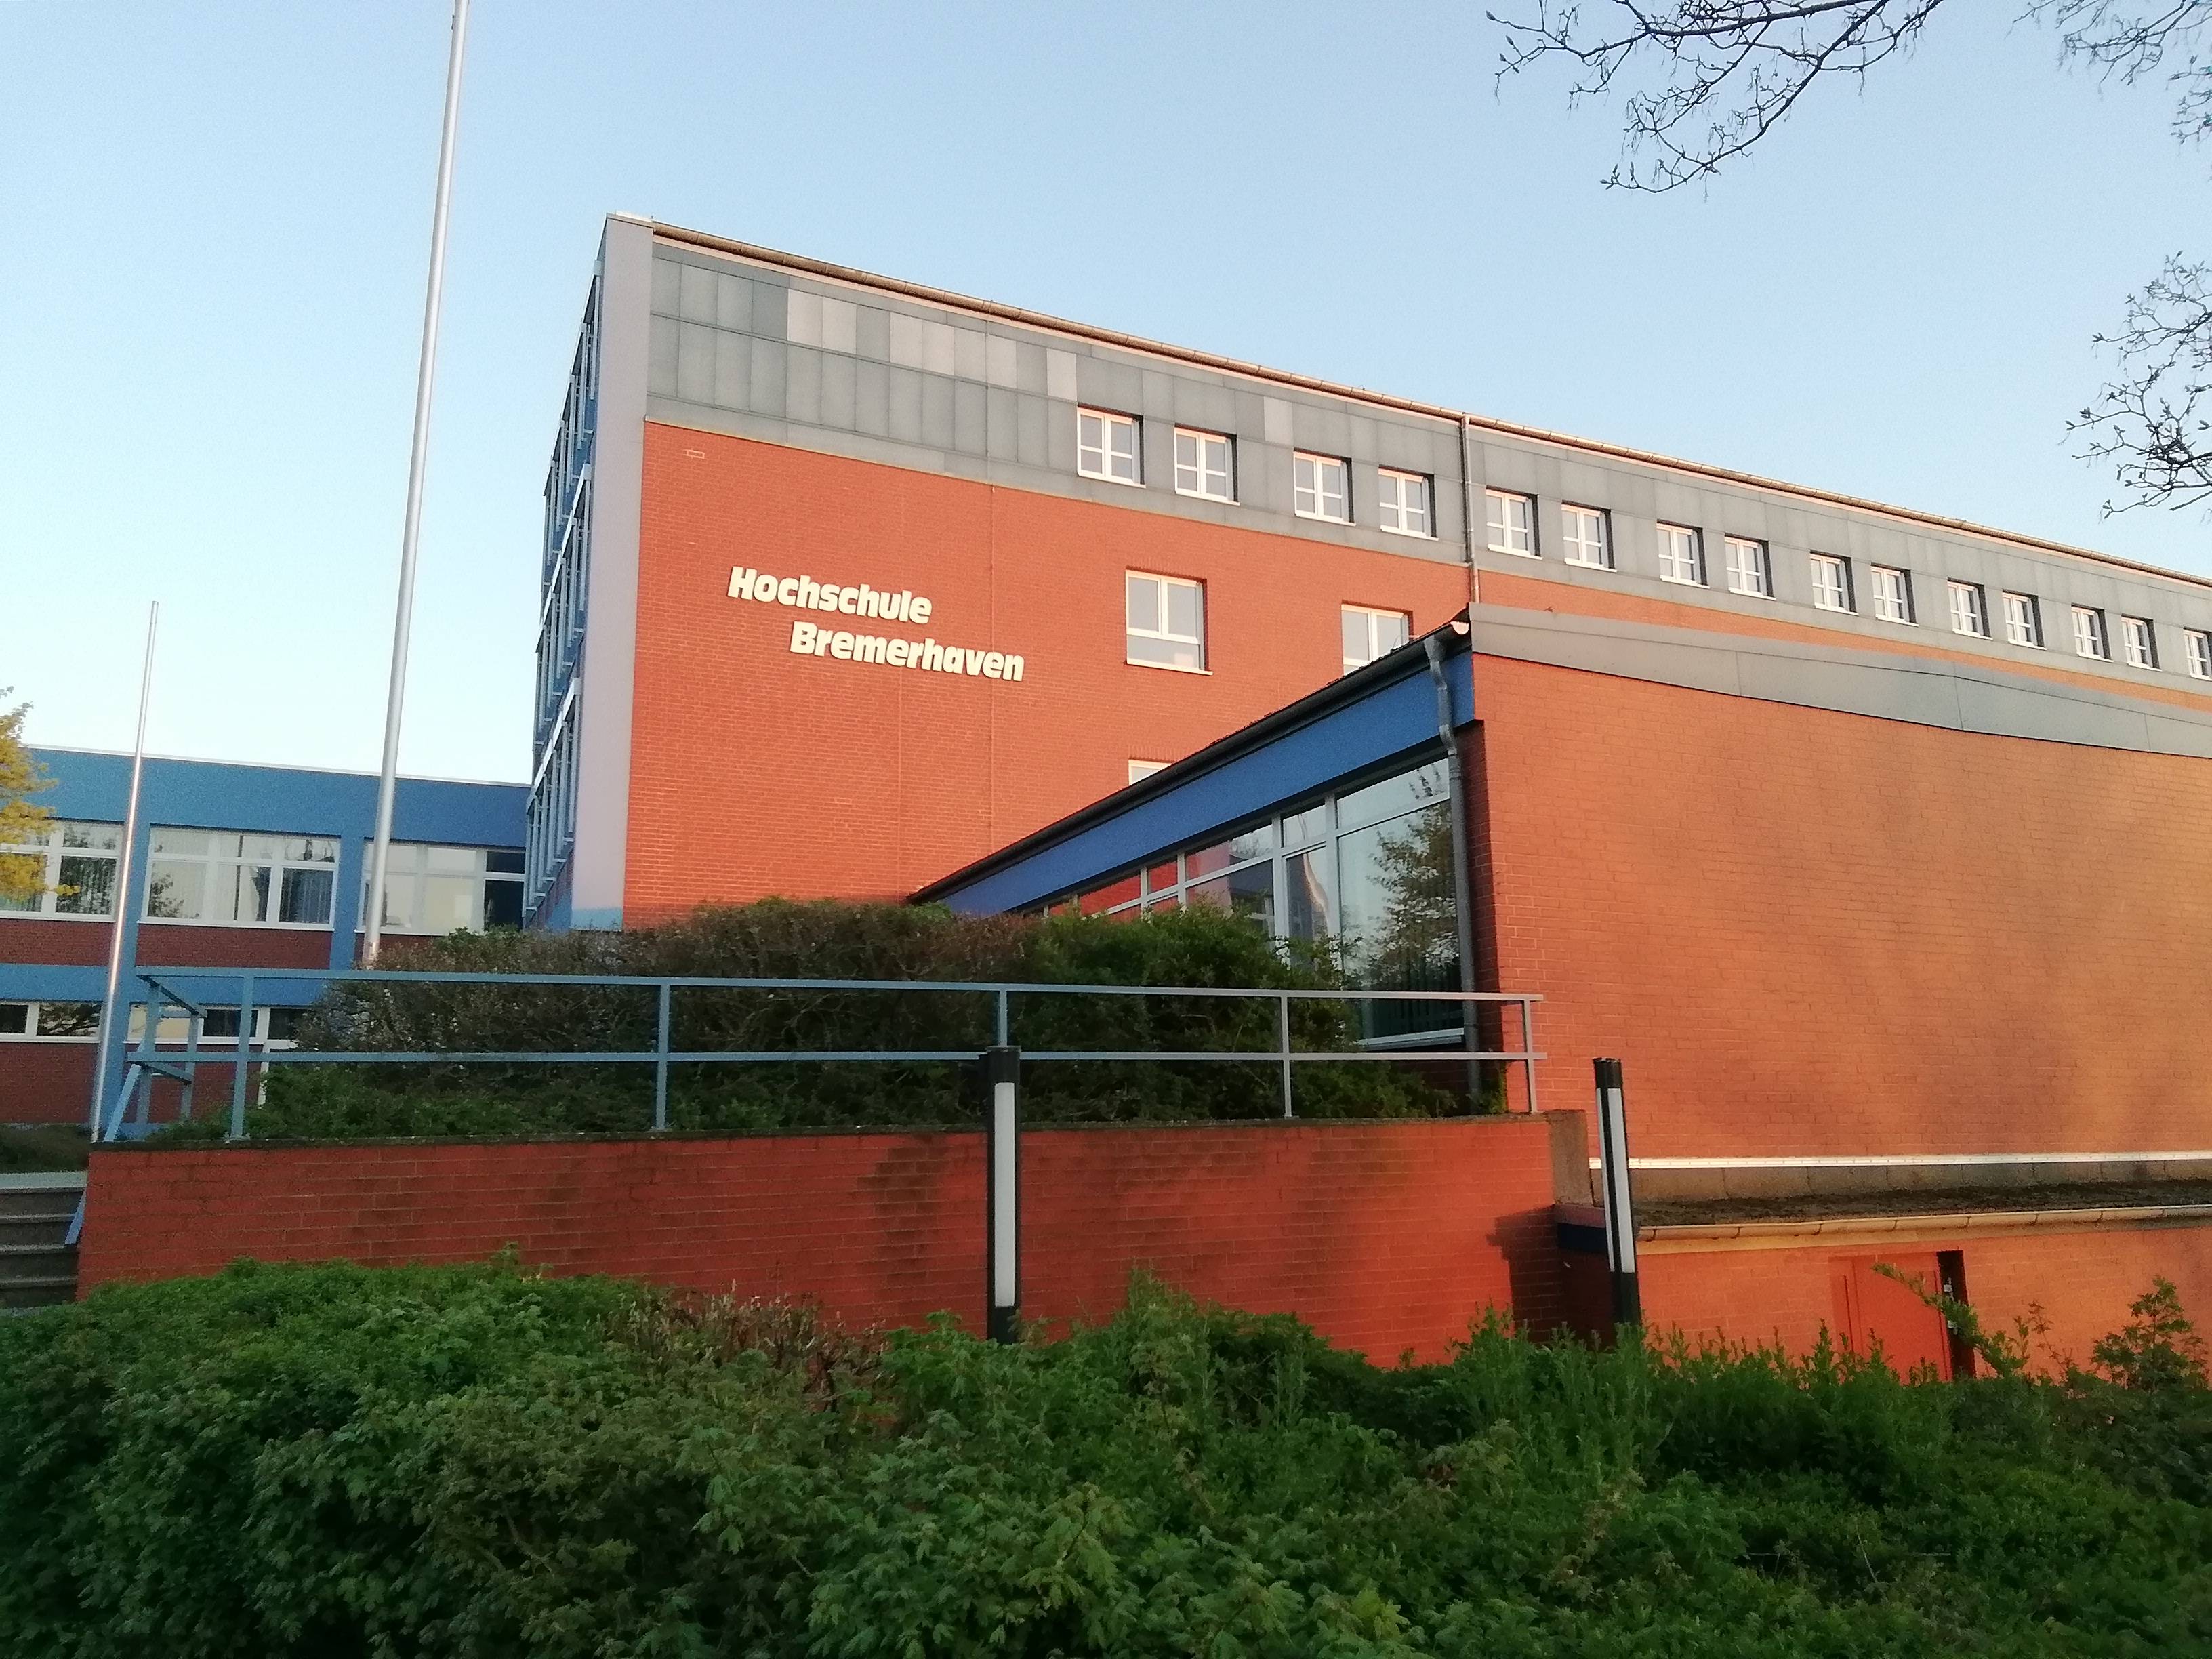 Bild 1 Asta Allgemeiner Studentenausschuß Hochschule Bremerhaven in Bremerhaven